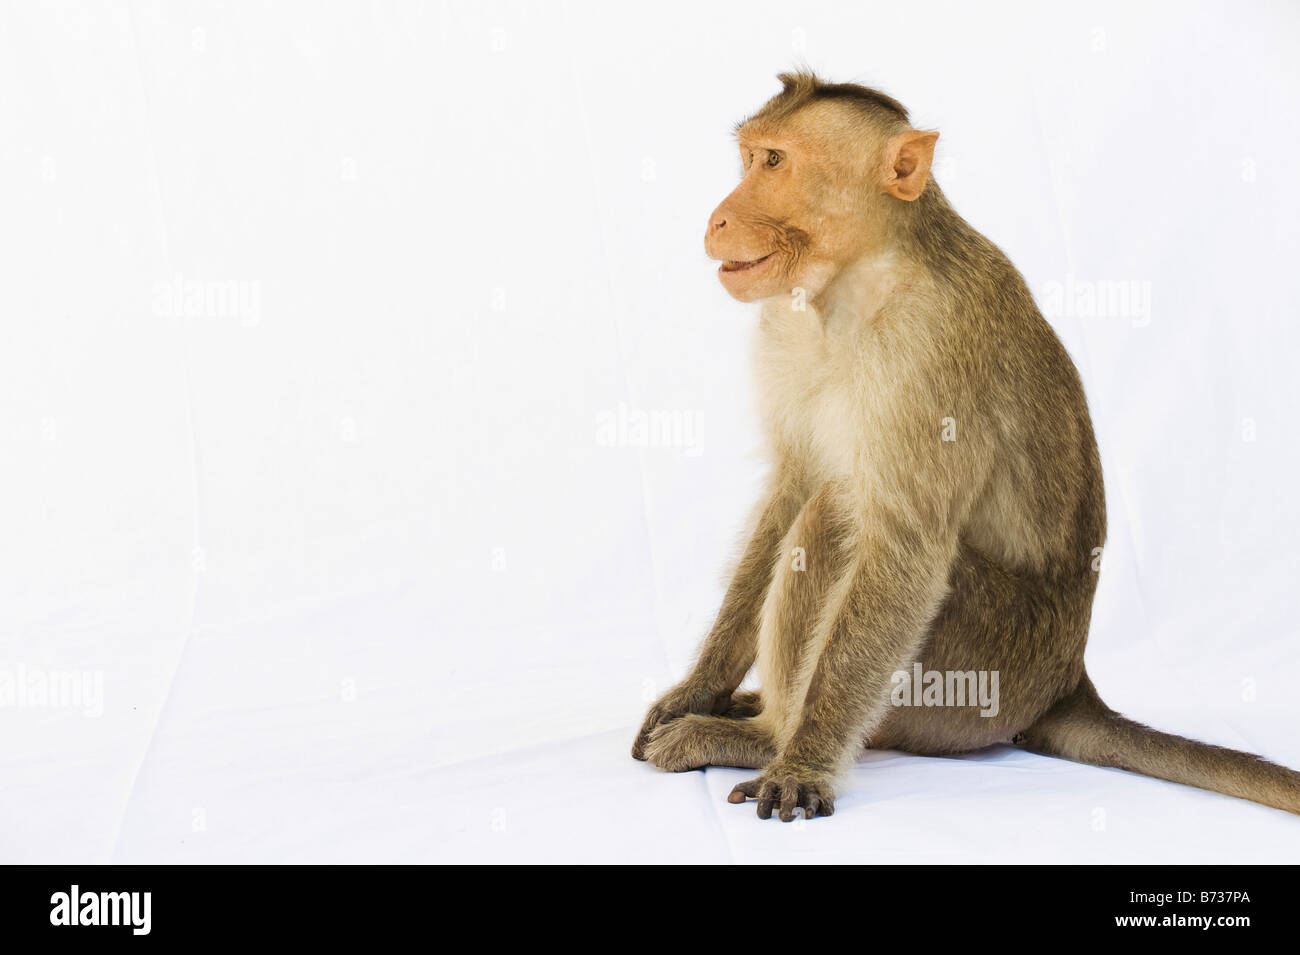 Macaca Radiata. Bonnet macaque monkey on white sheet. India Stock Photo